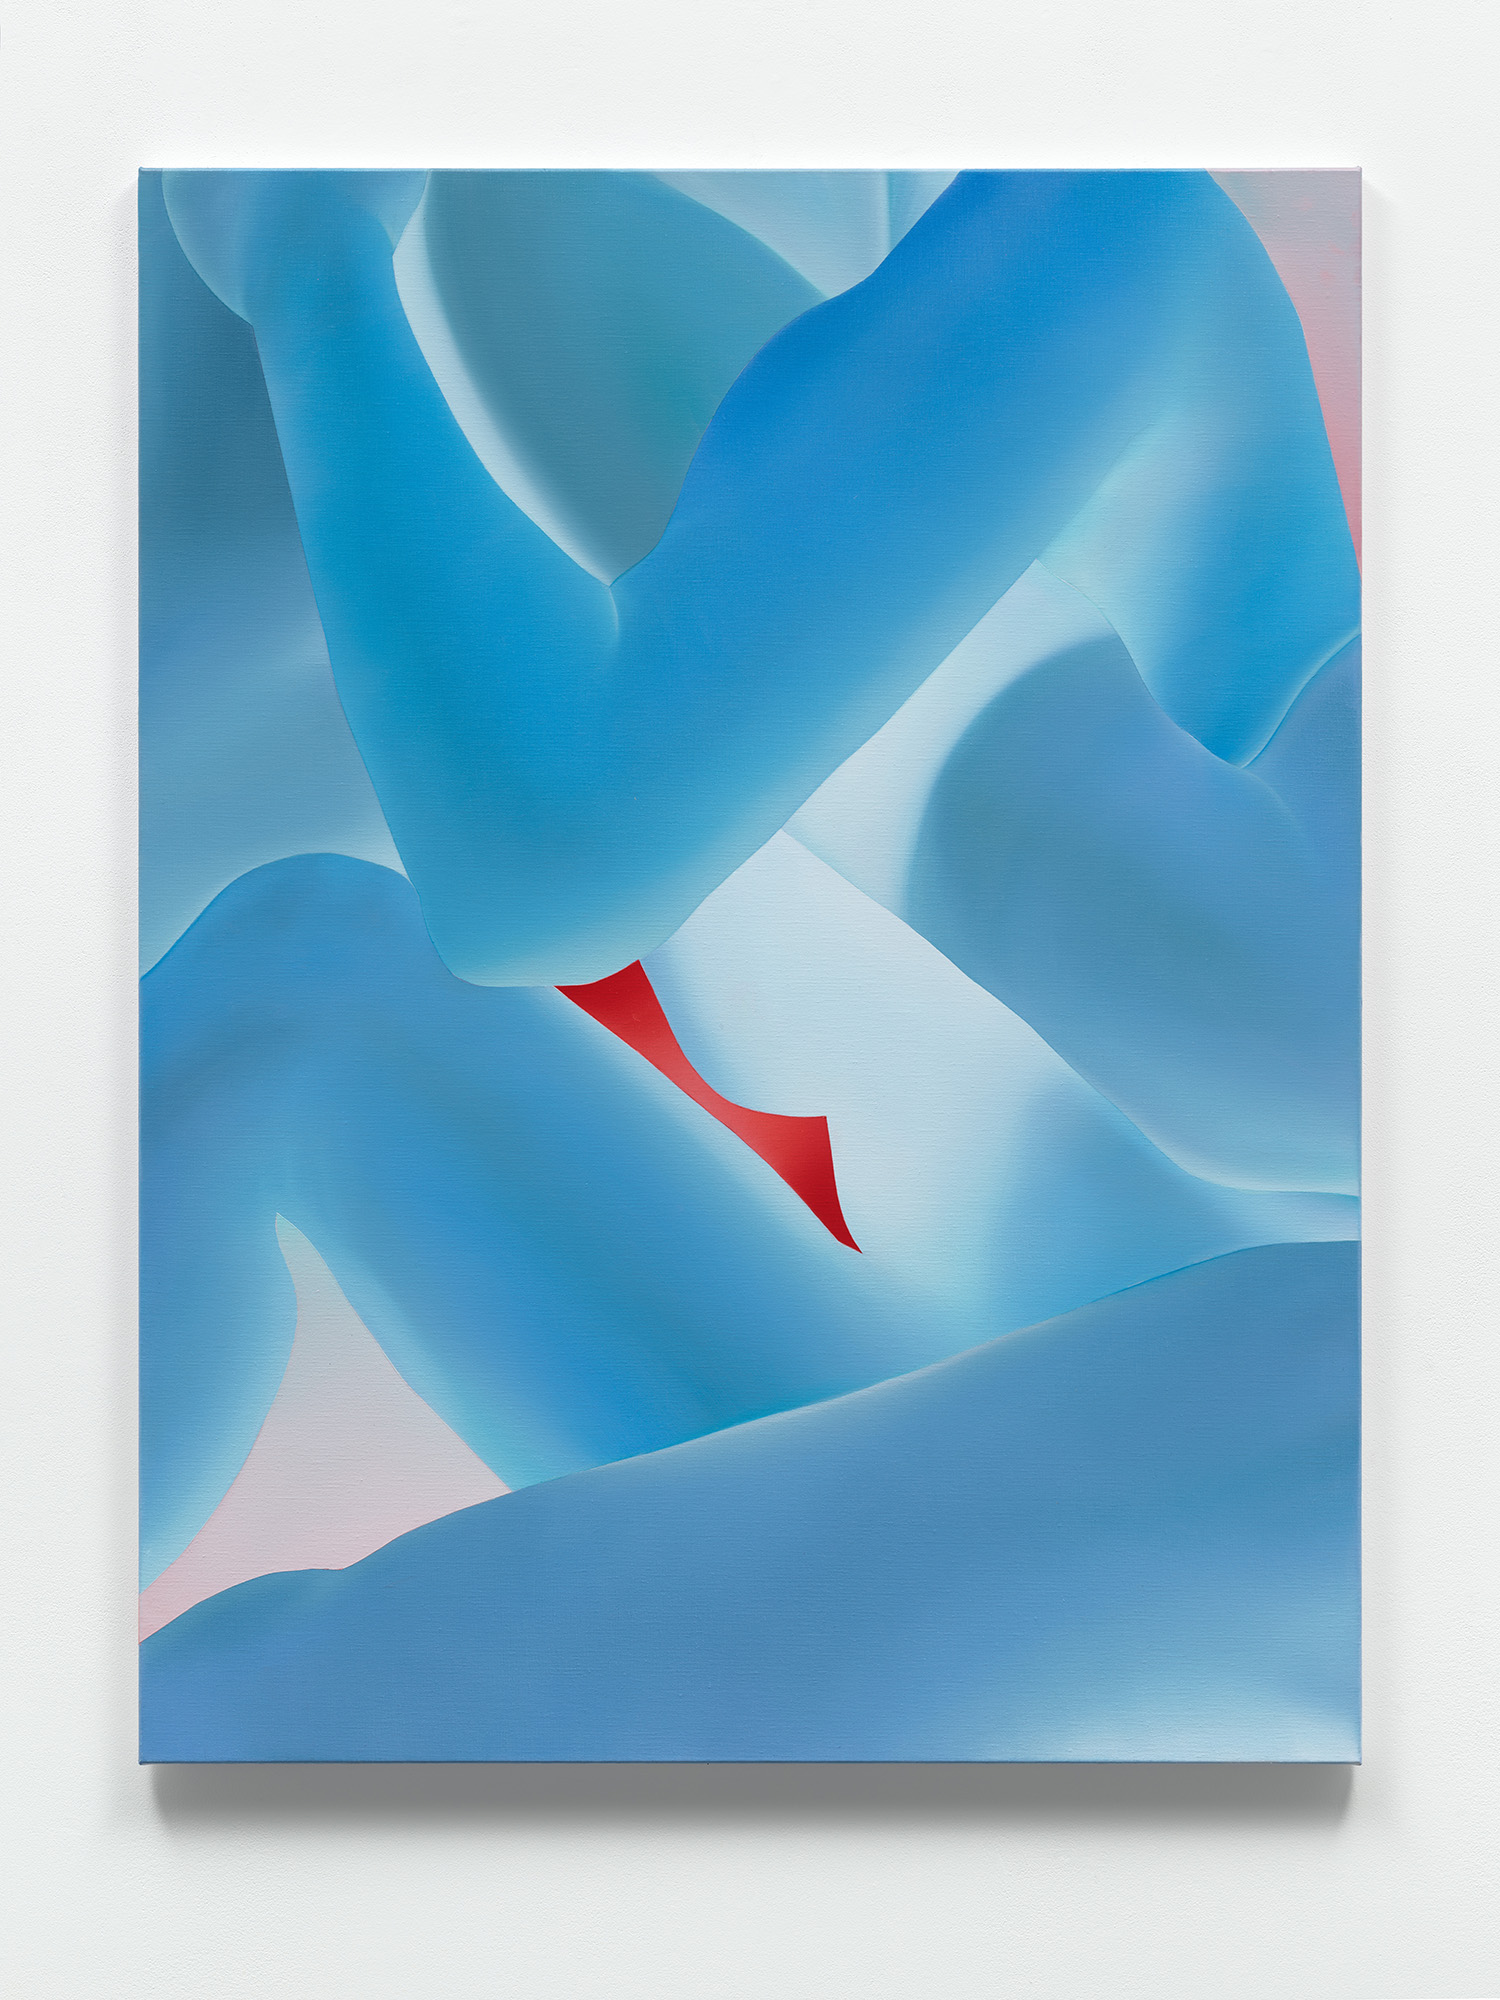 Vivian Greven, Crac III, 2022, oil on canvas, 130 × 100 cm, 51 1/8 × 39 3/8 in